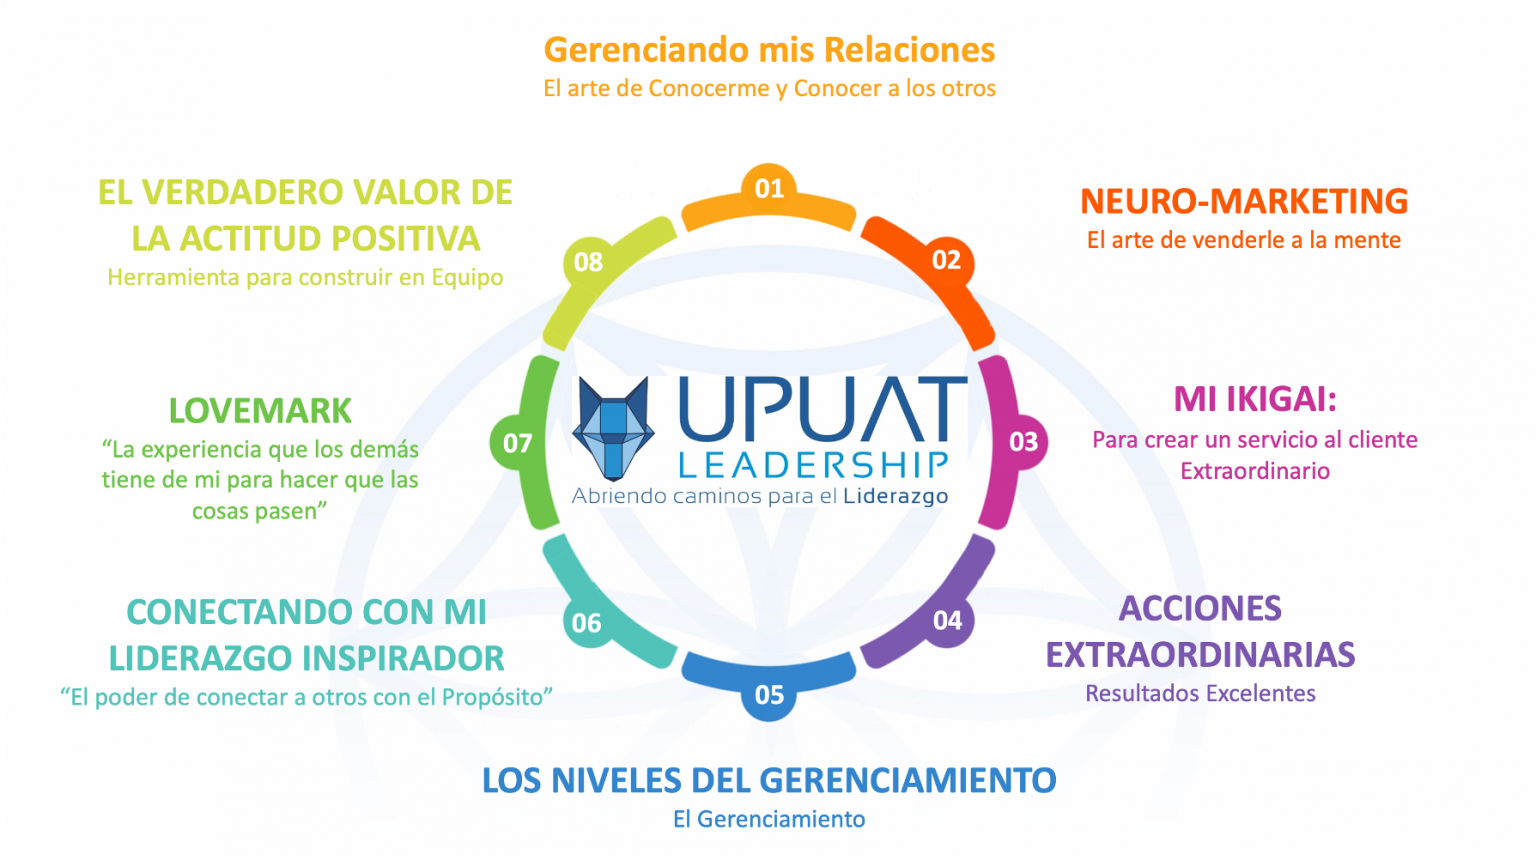 upuat-leadership-niveles-gerenciamiento